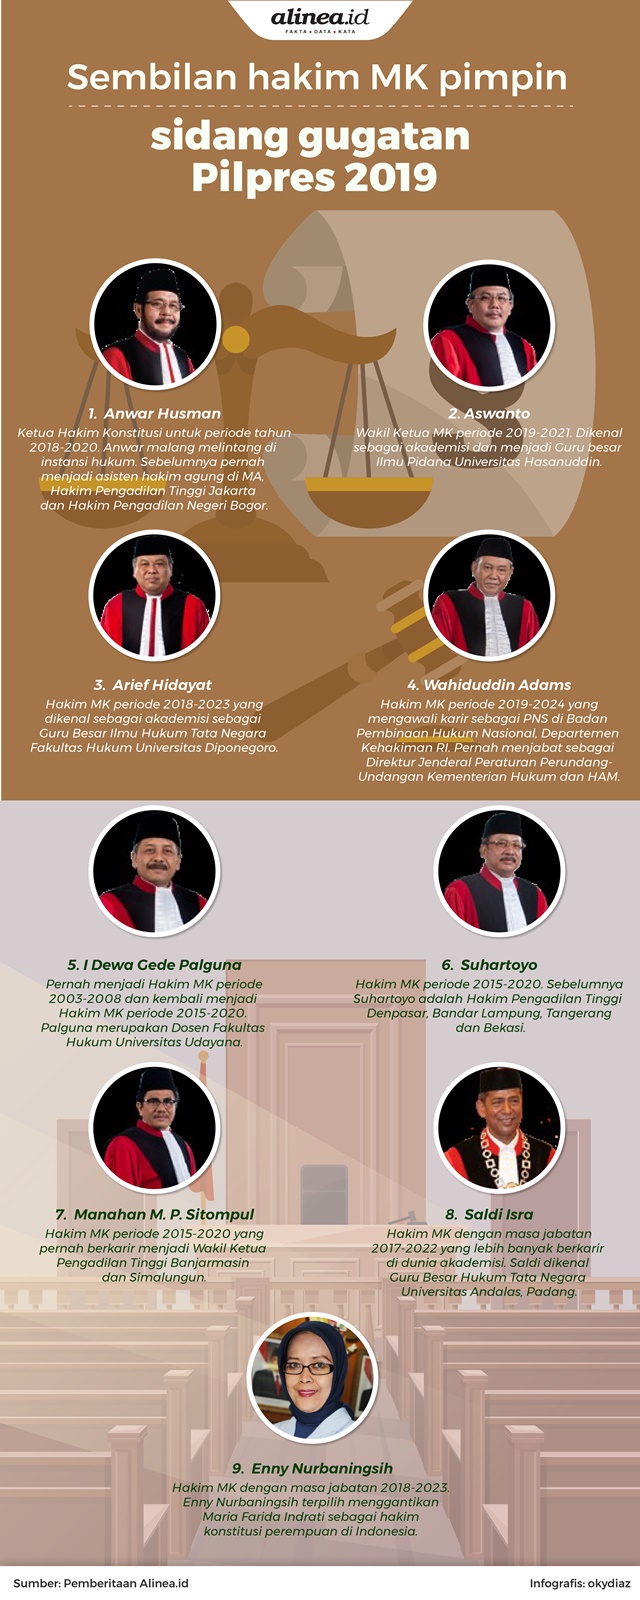 Sembilan hakim MK yang memimpin sidang gugatan Pilpres 2019./Alinea.id